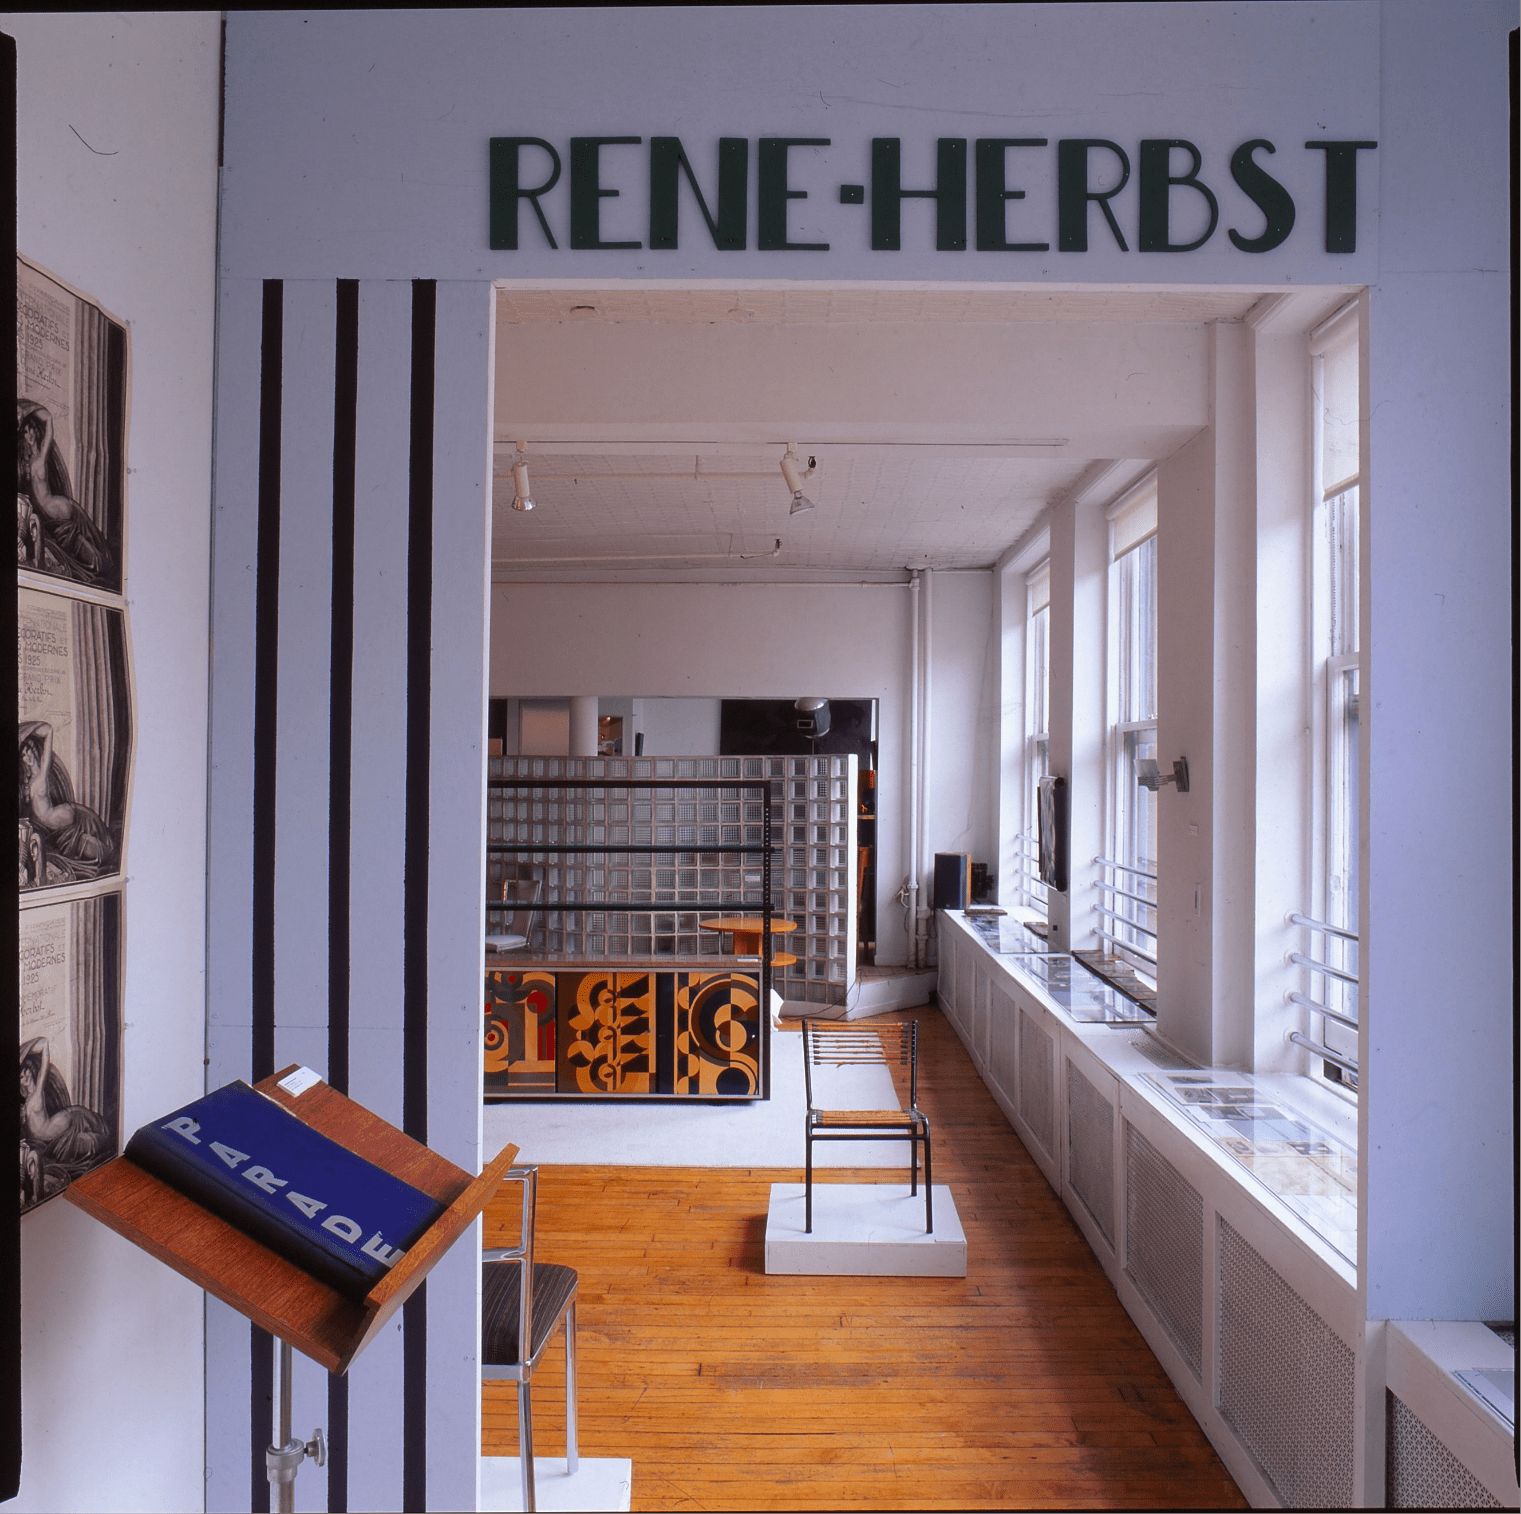 Galerie de Beyrie, New York, 1999 : Exposition « La Maison de René Herbst »